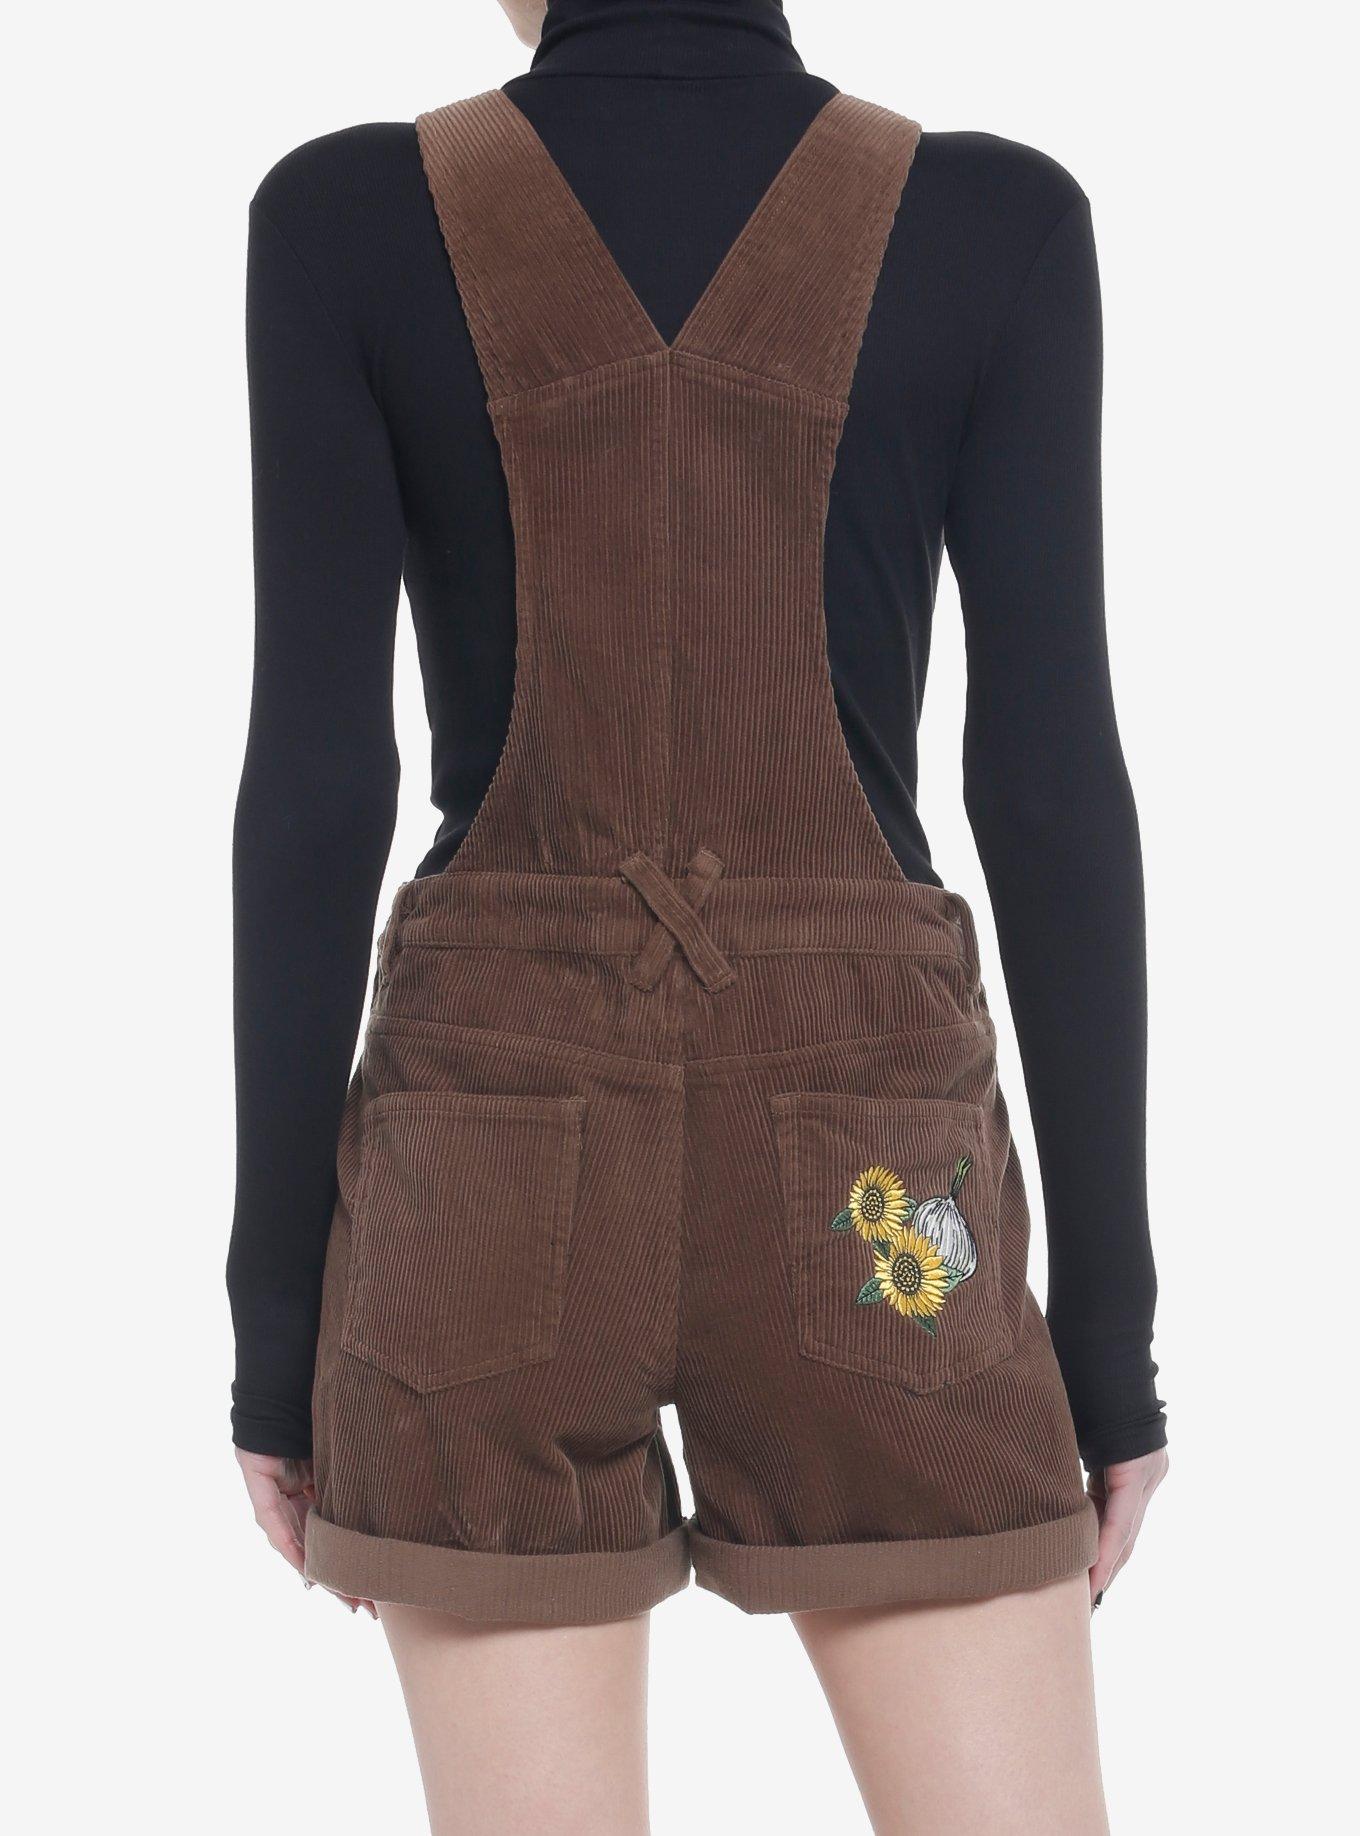 Shrek Embroidered Corduroy Shortalls, MULTI, alternate